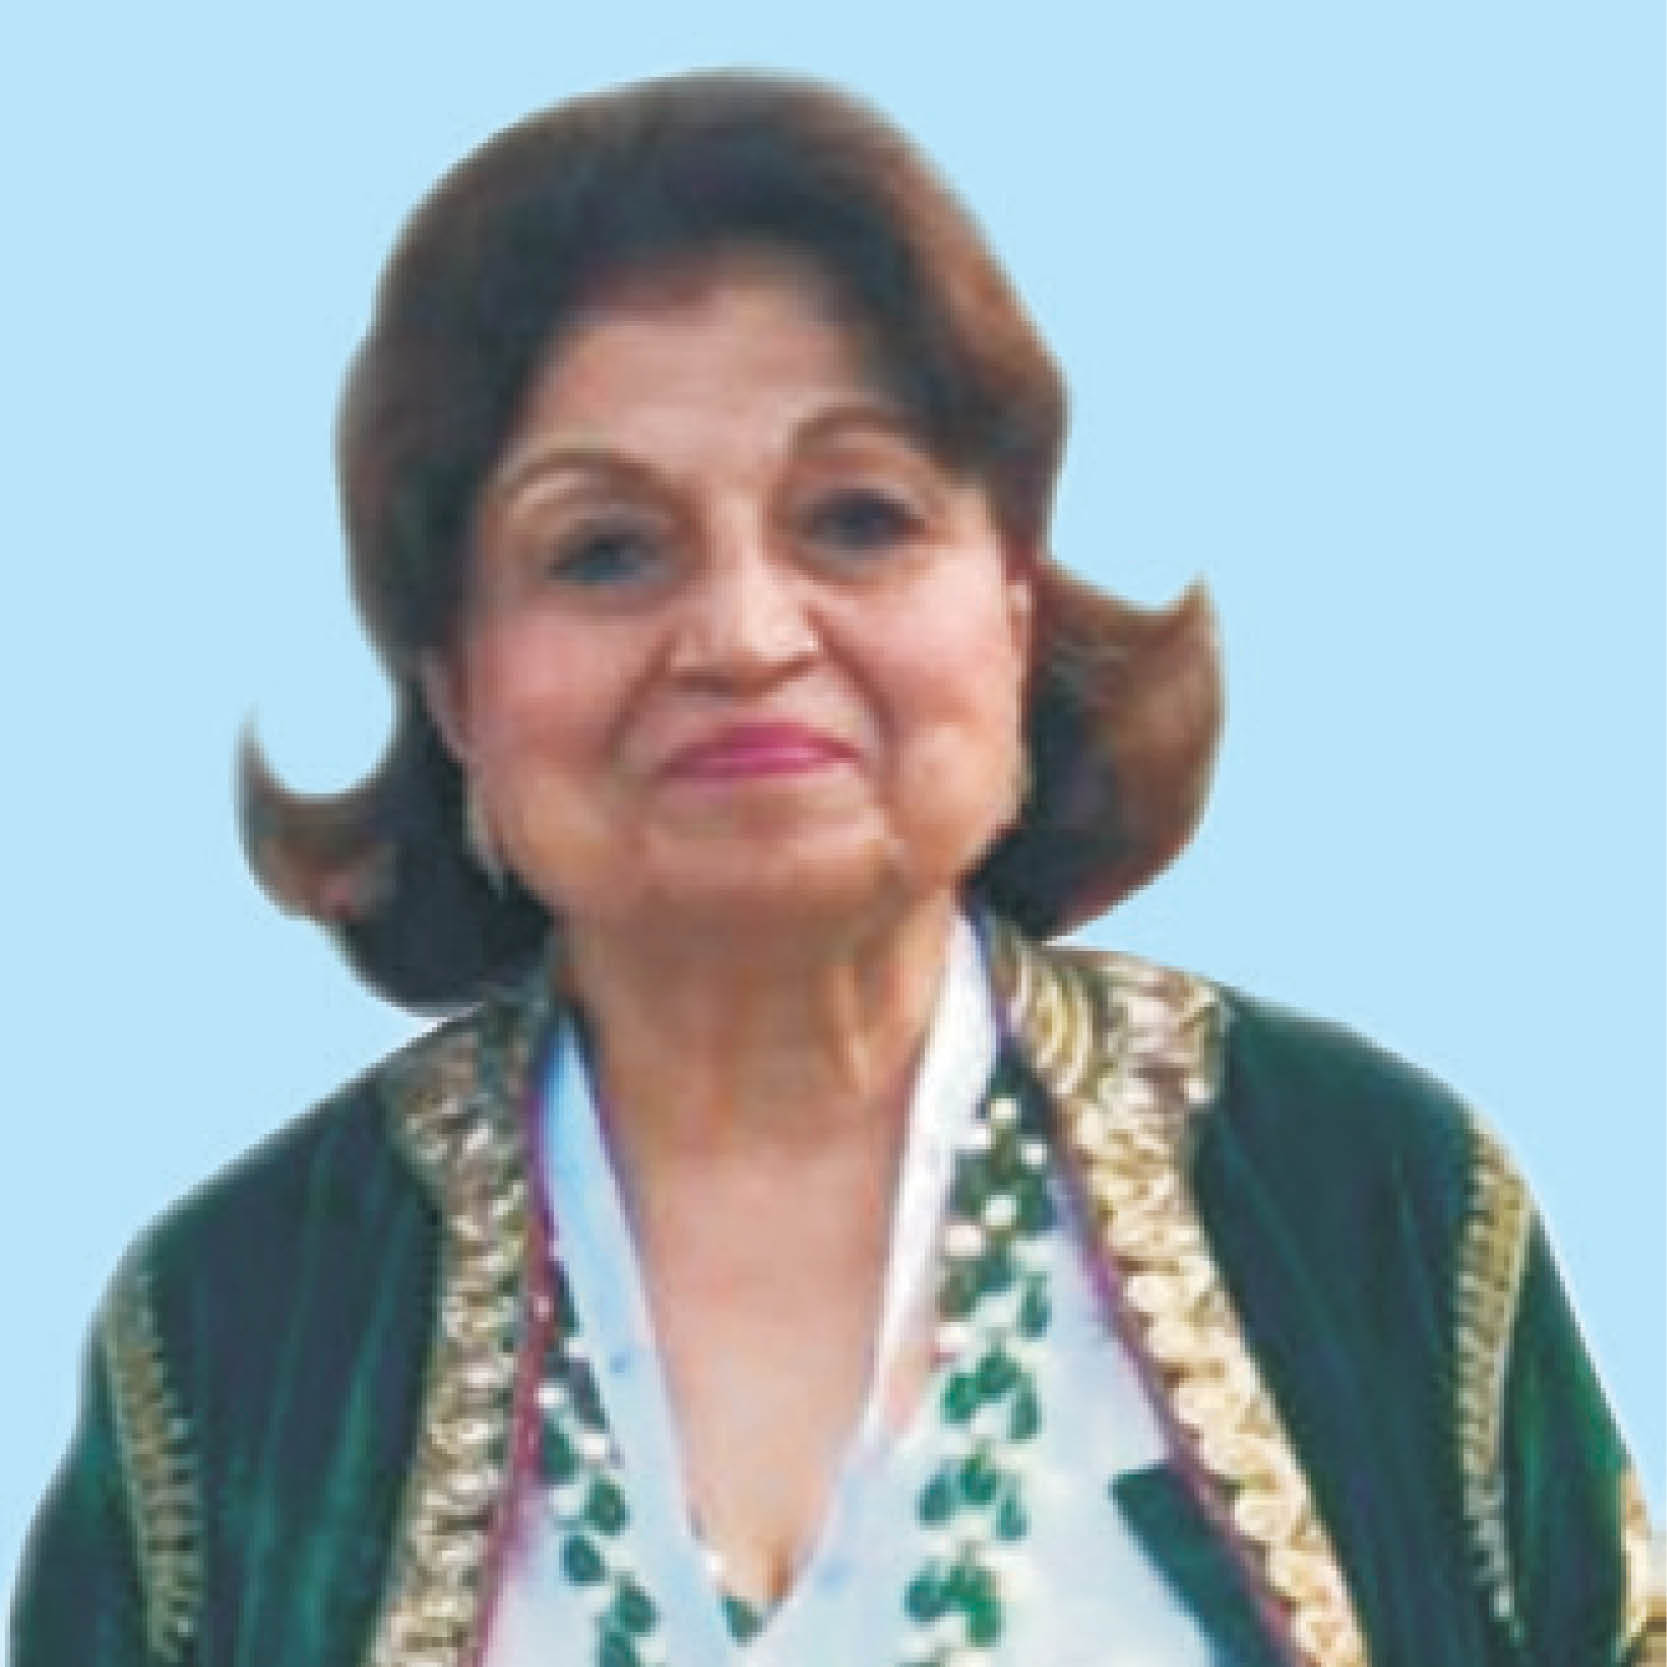 Author Rashmi Jolly